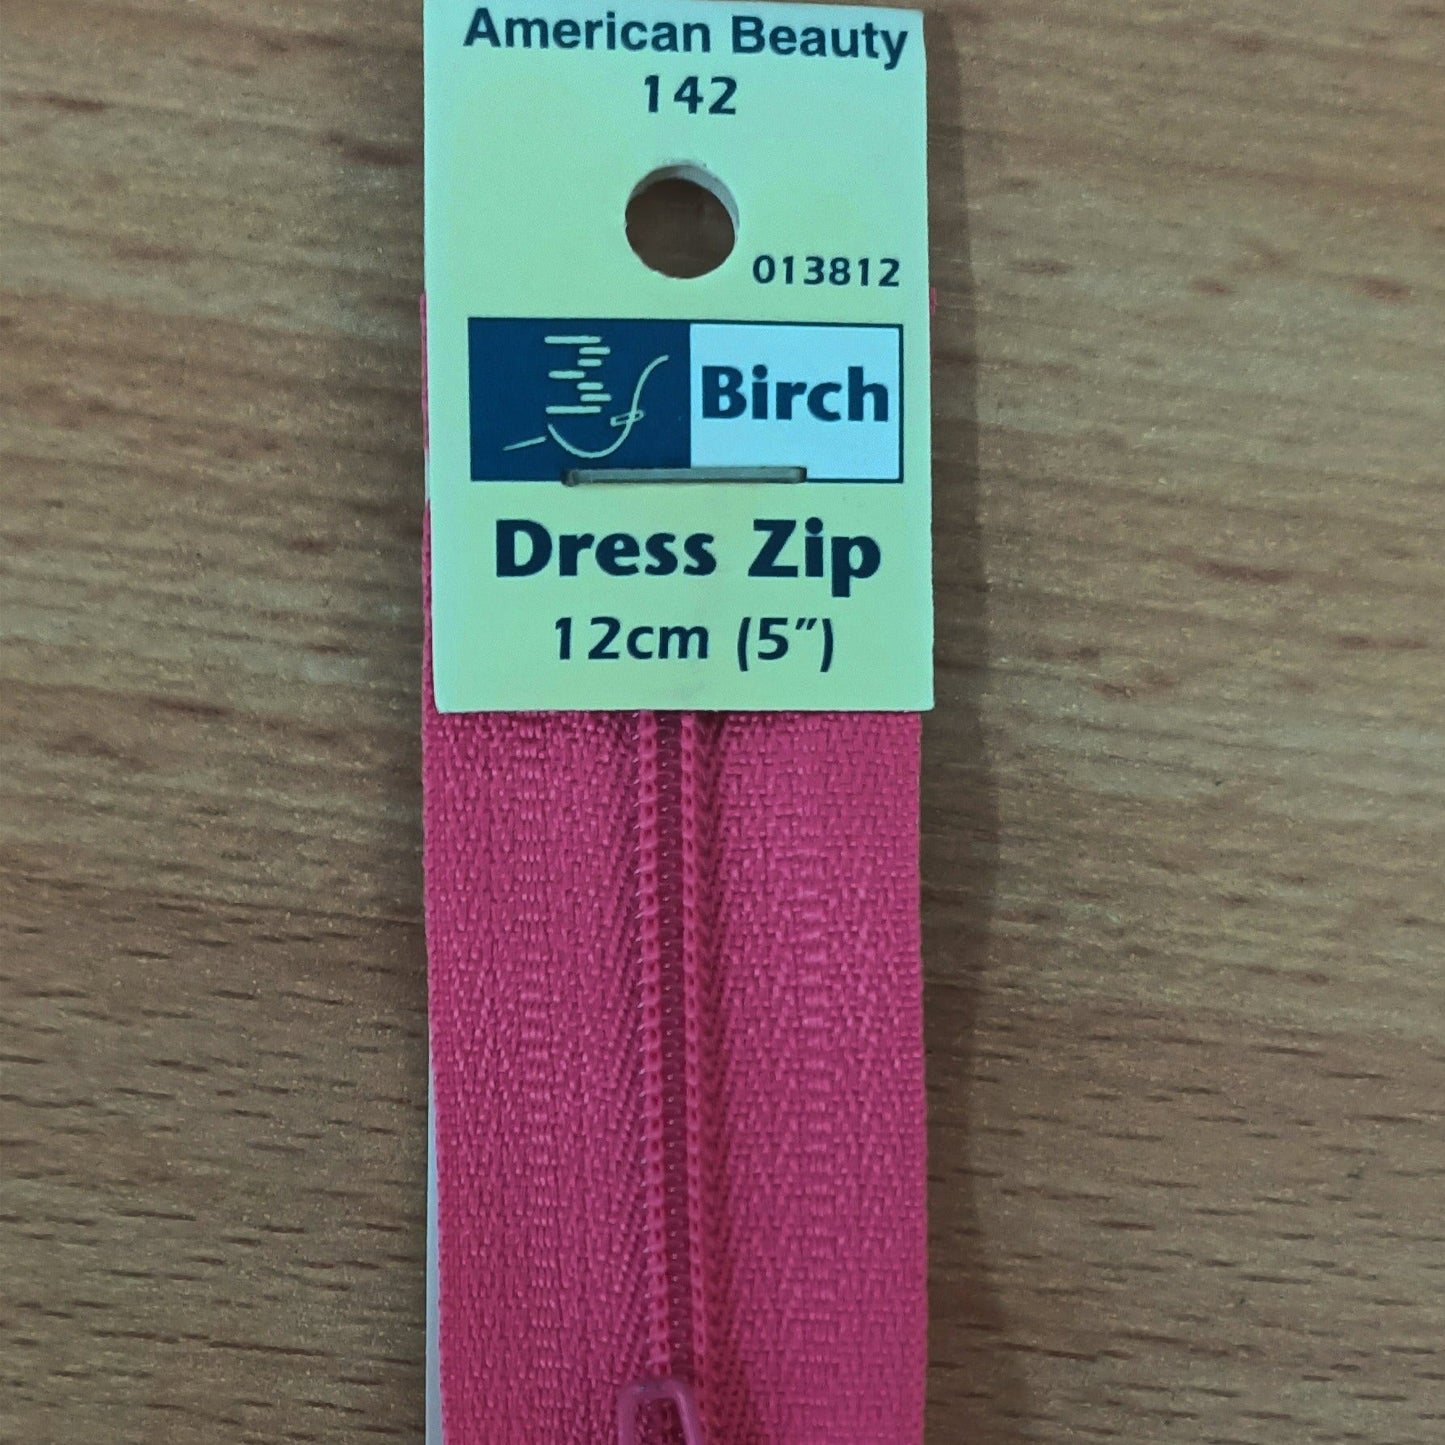 Dress Zip 18cm (7")